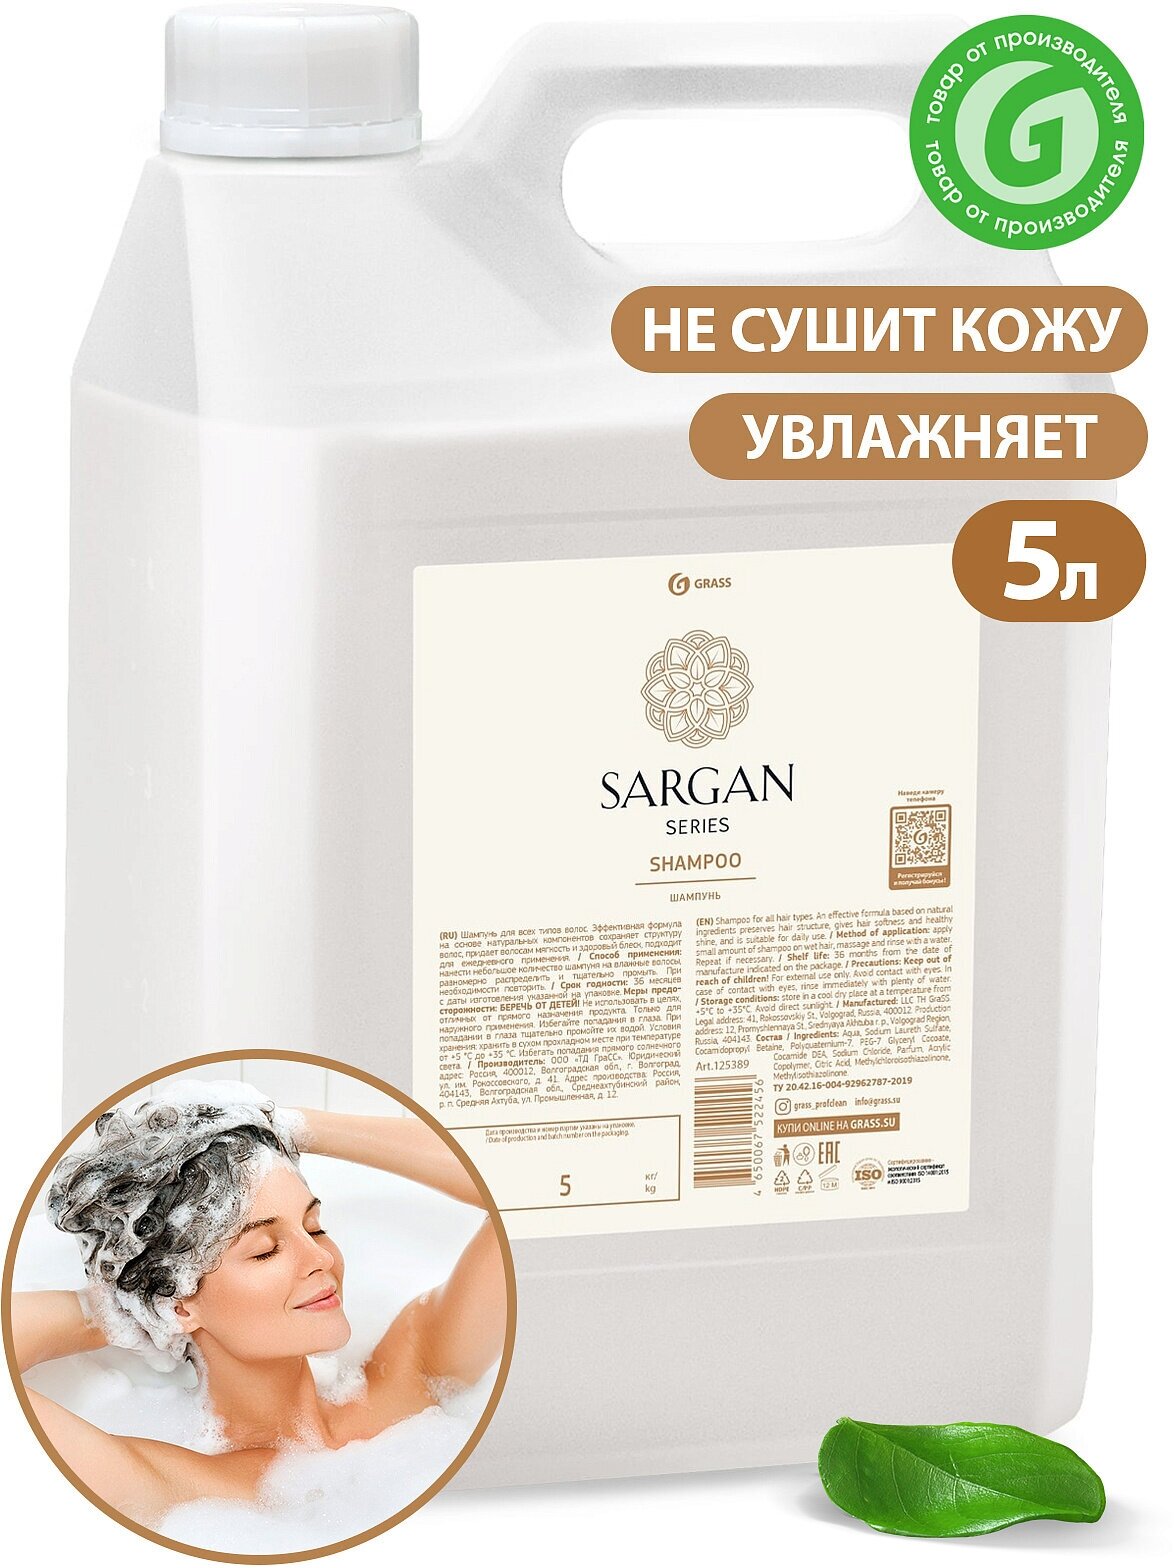 Шампунь для волос увлажняющий профессиональный Sargan Professional, увлажняющий, без парабенов, 5 литров